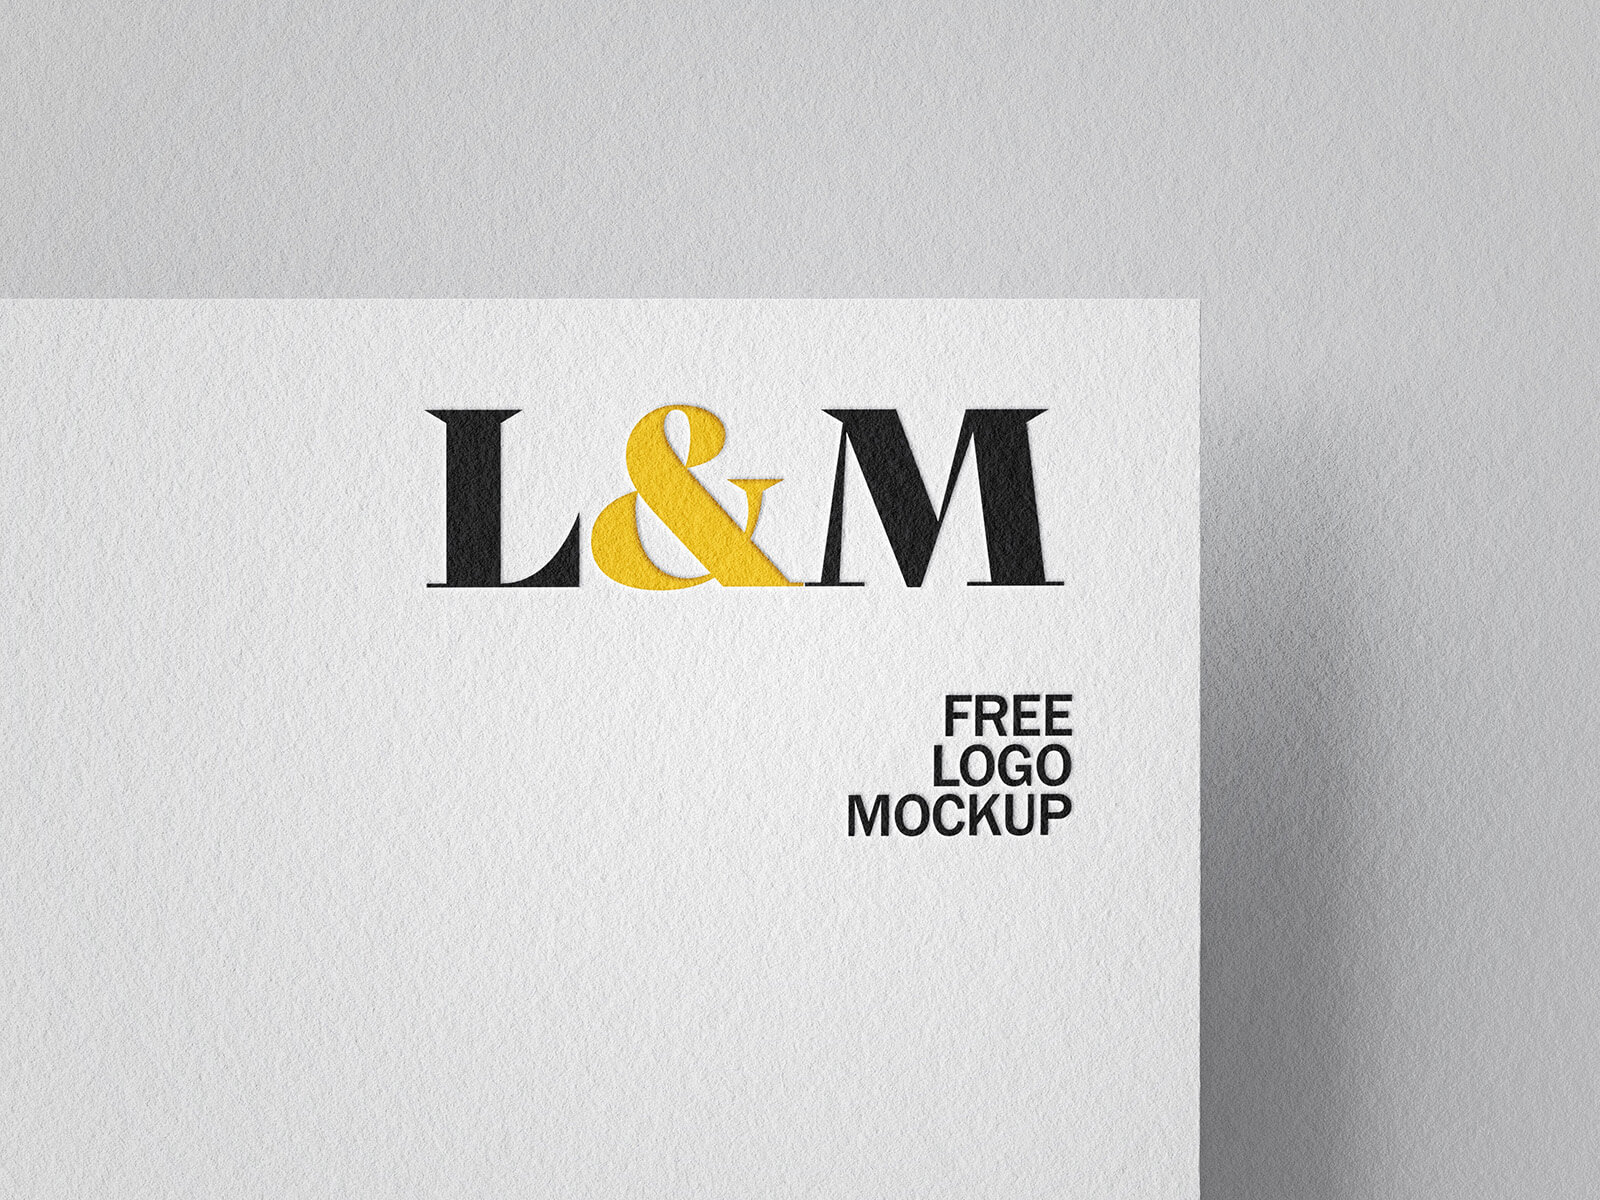 Embossed Logo on White Paper Mockup